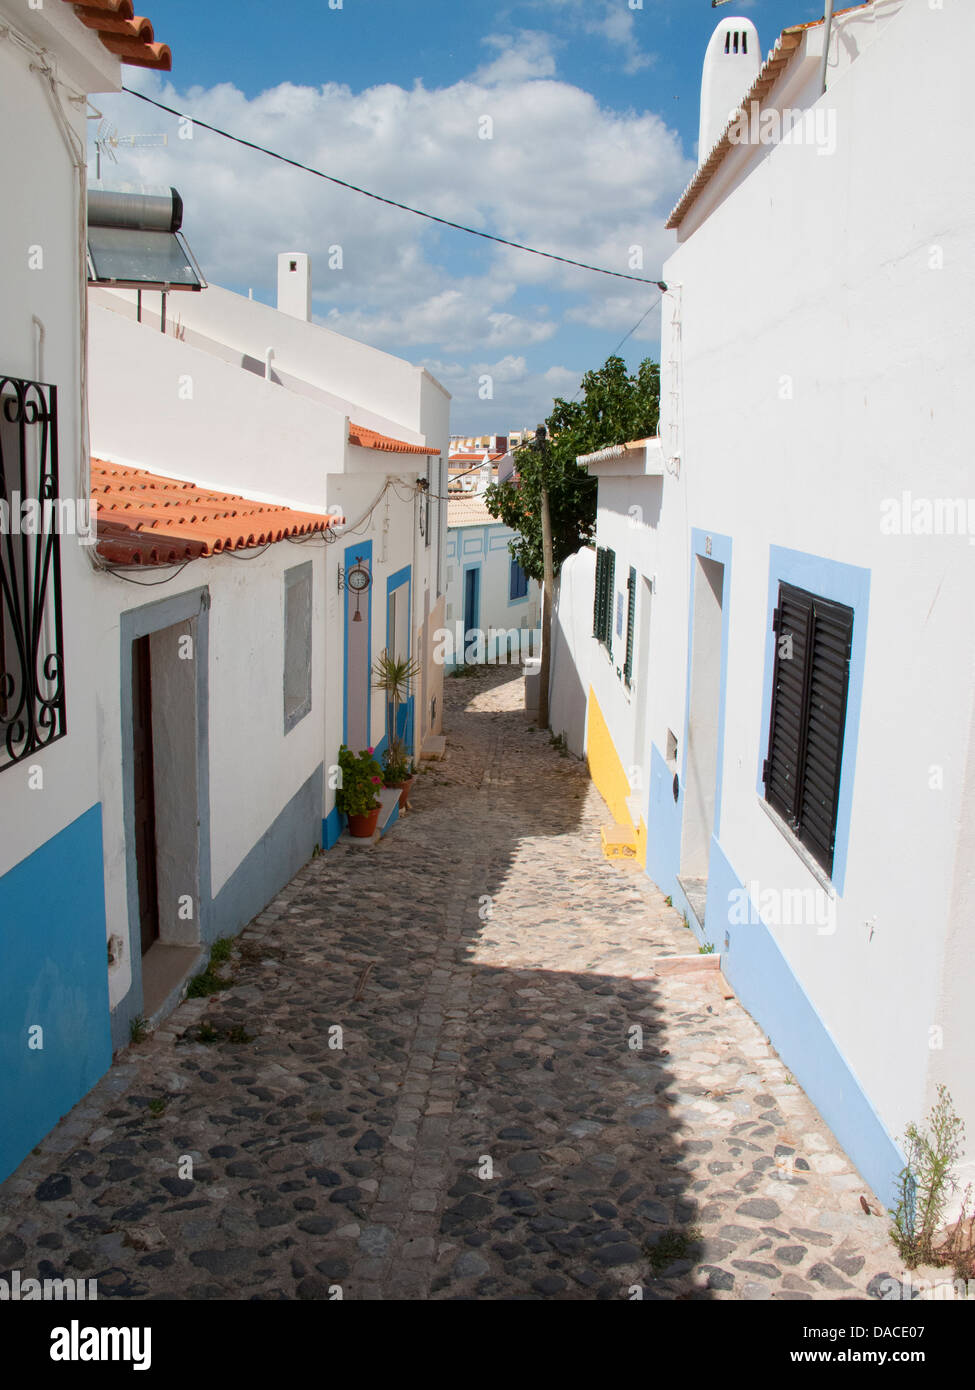 Village street in Ferragudo, the Algarve, Portugal Stock Photo